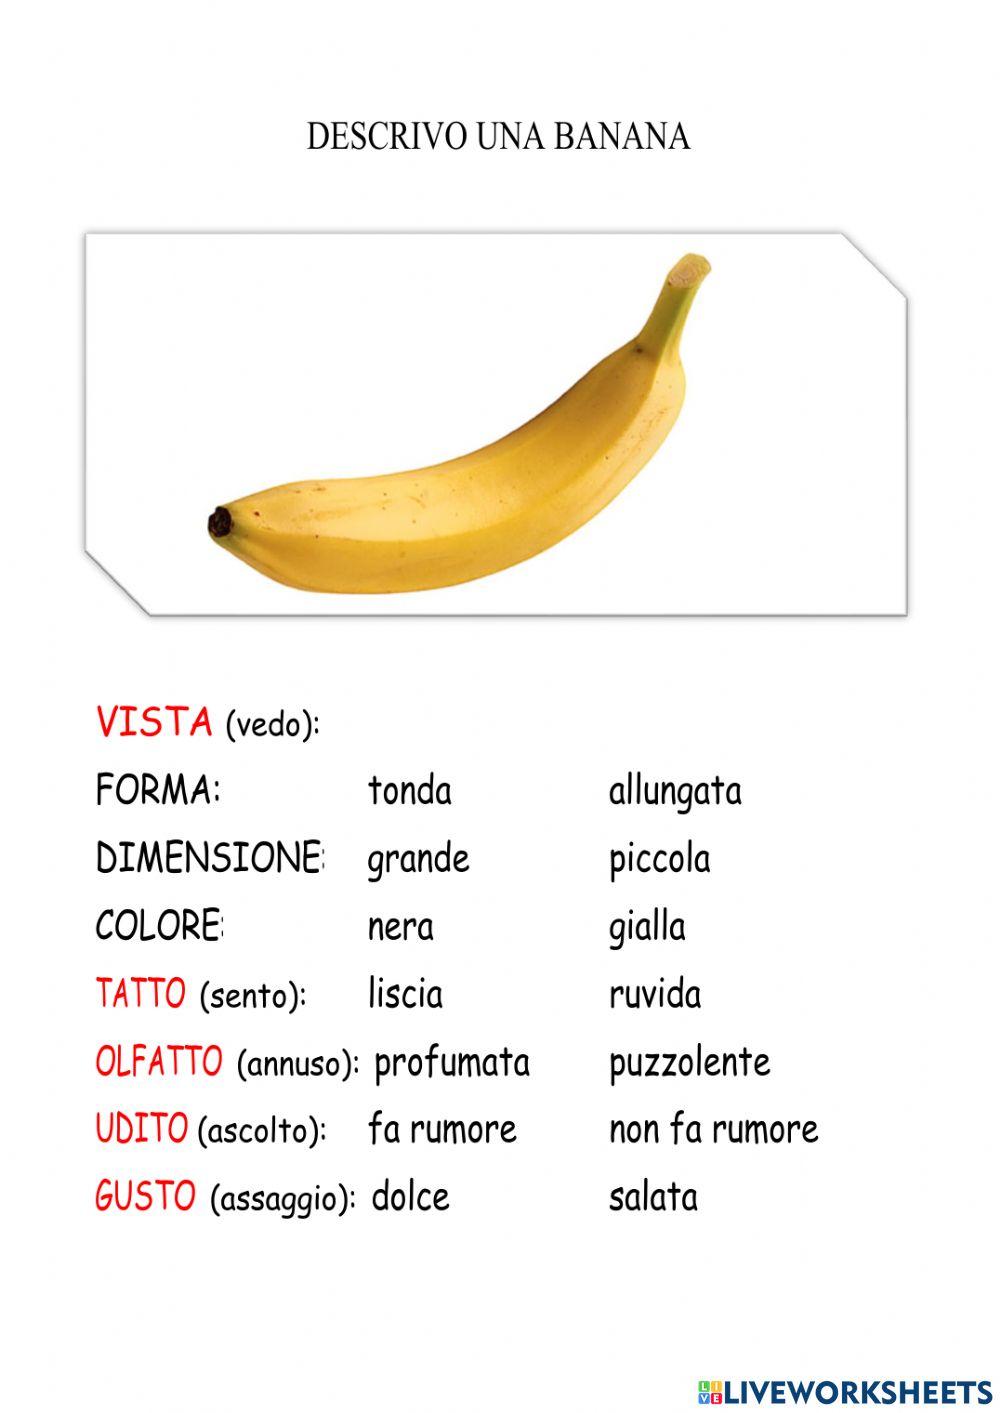 Descrivo una banana